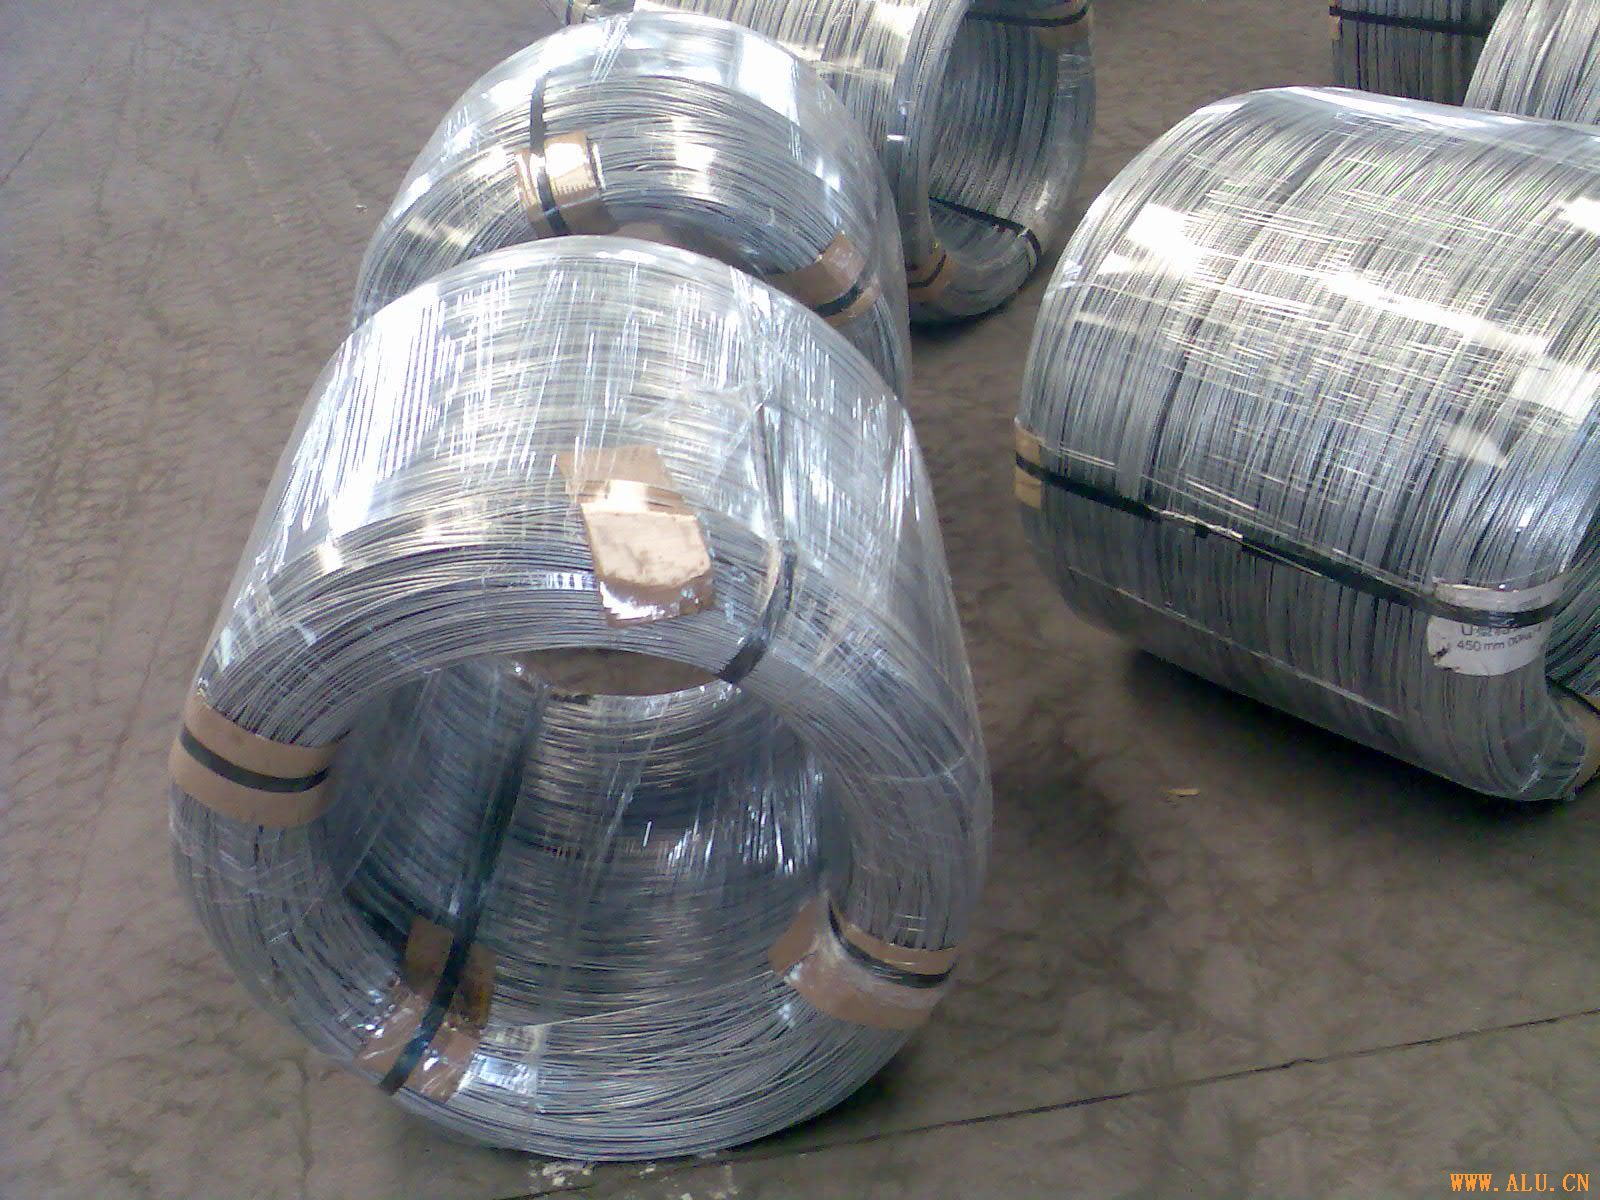 galvanized wire in big coil